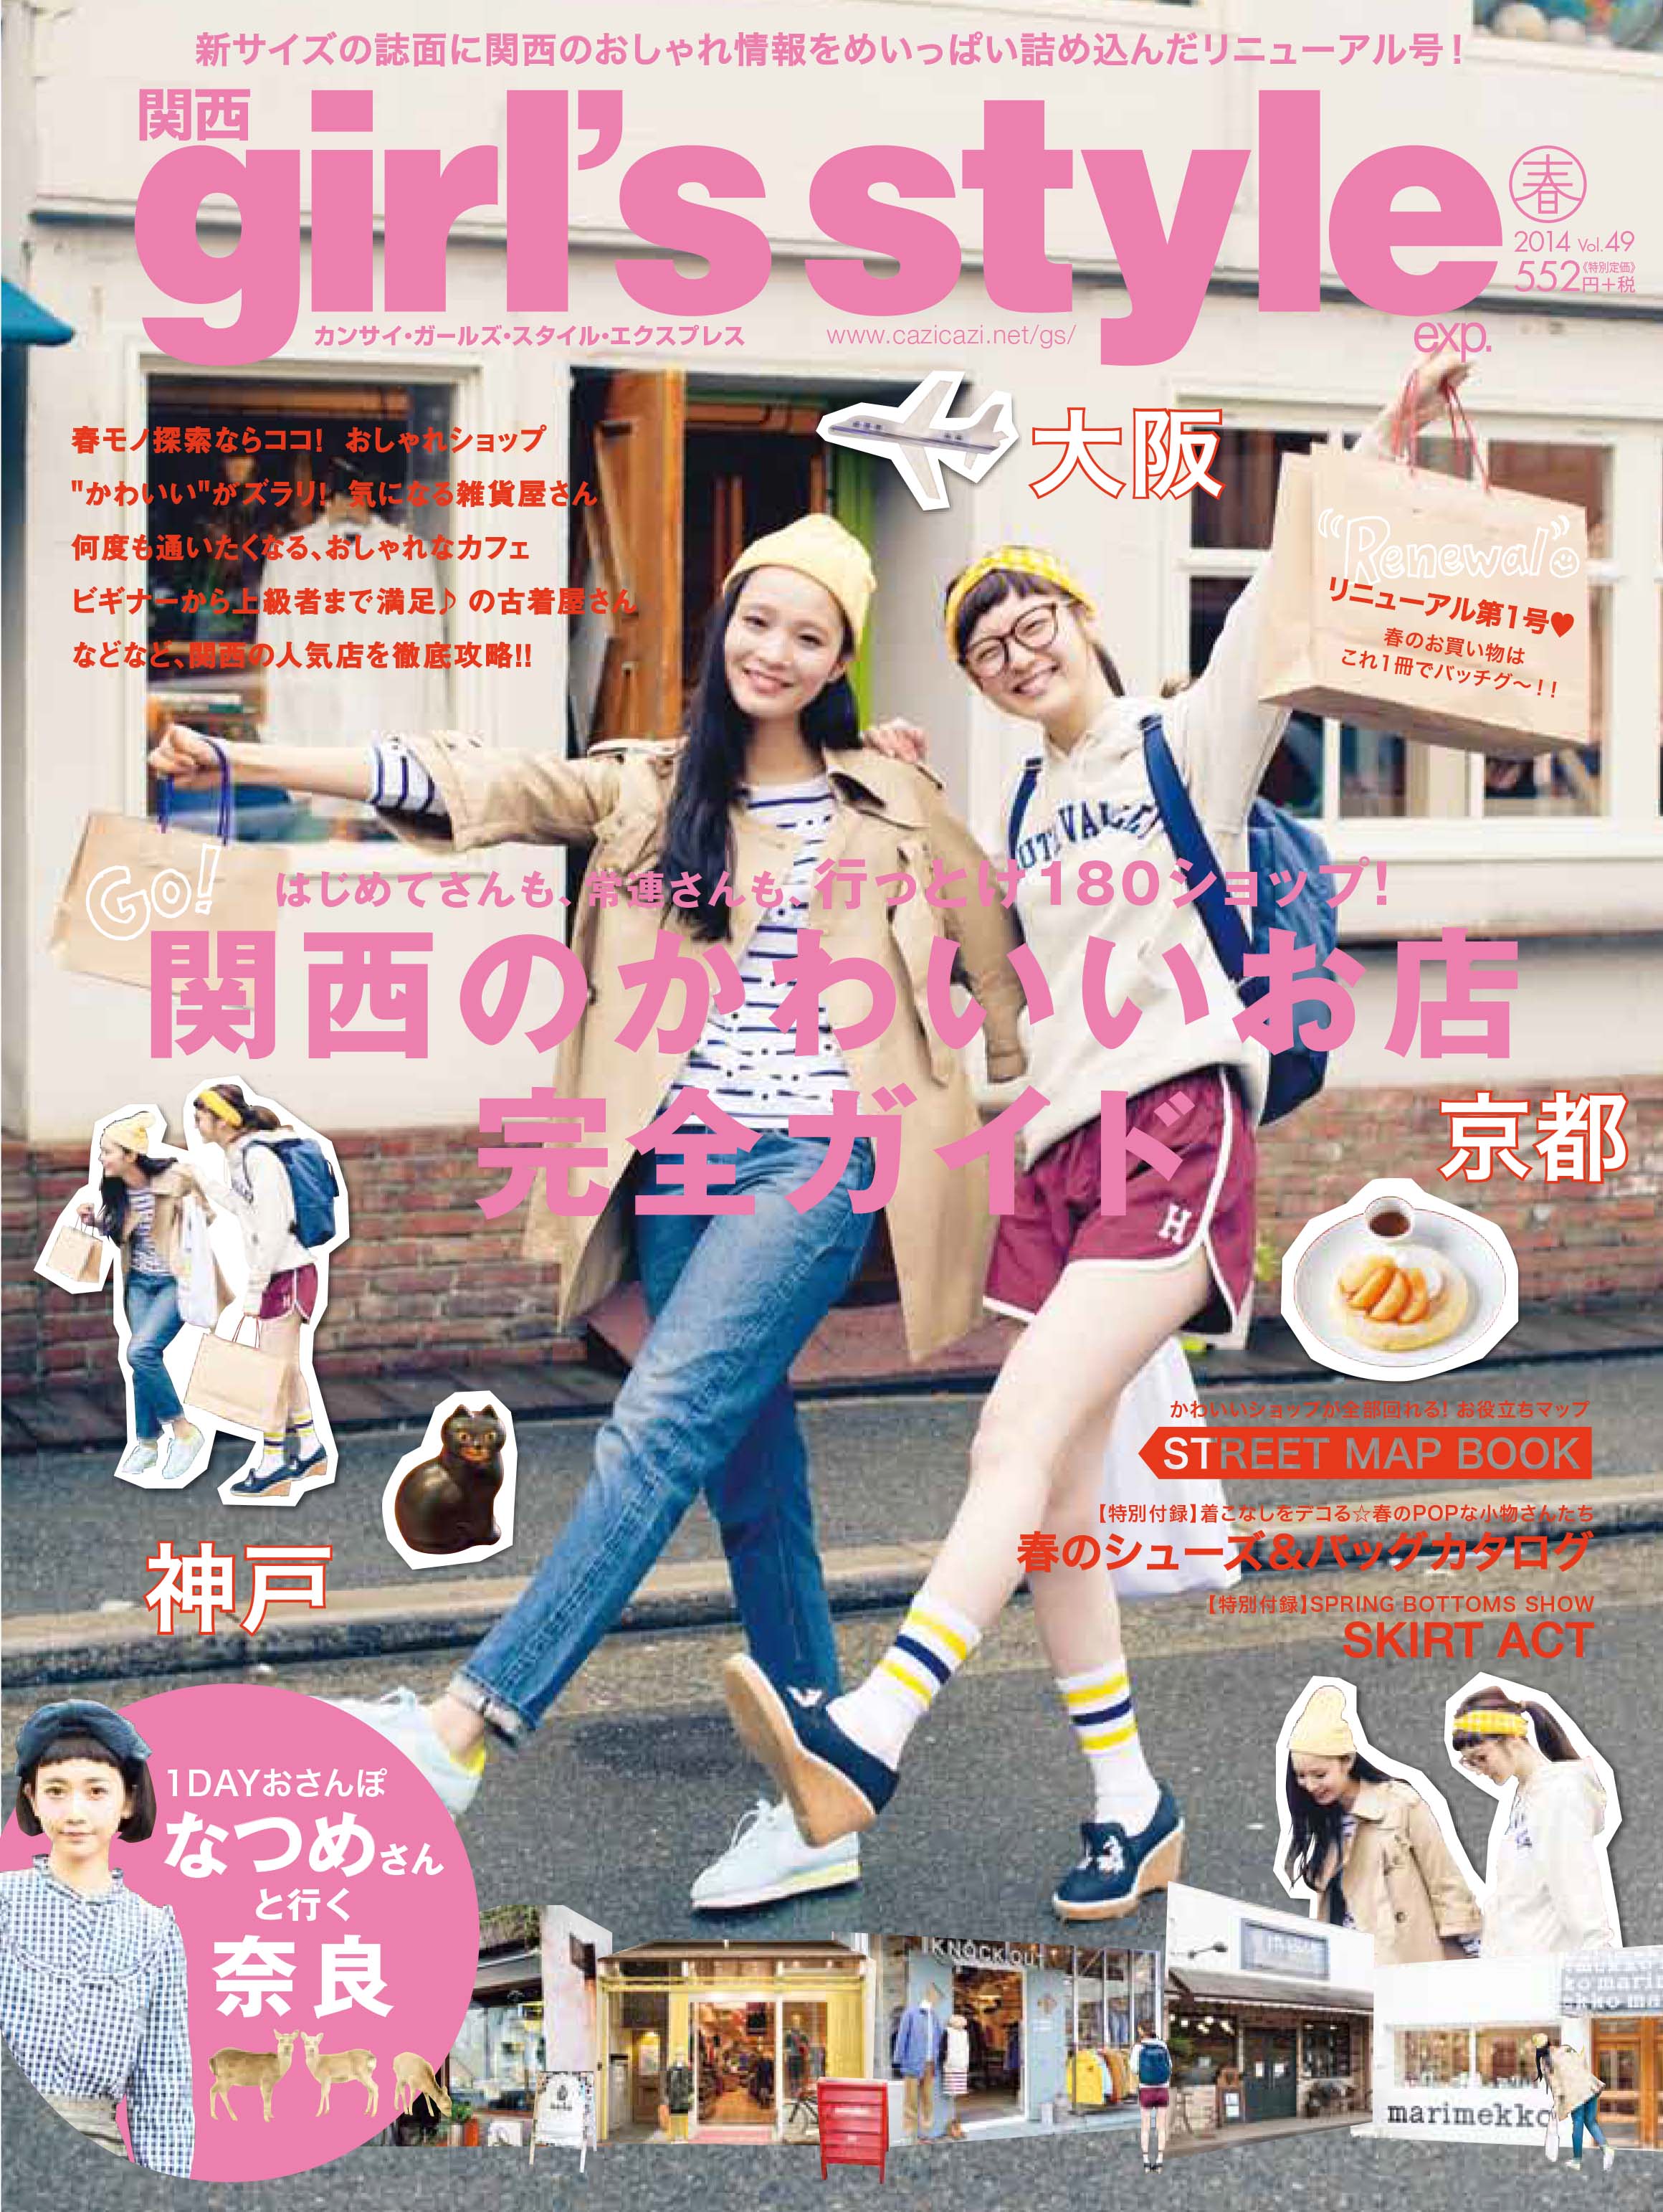 関西 girl’s style exp. vol.49	2014年	03月	株式会社イリオス